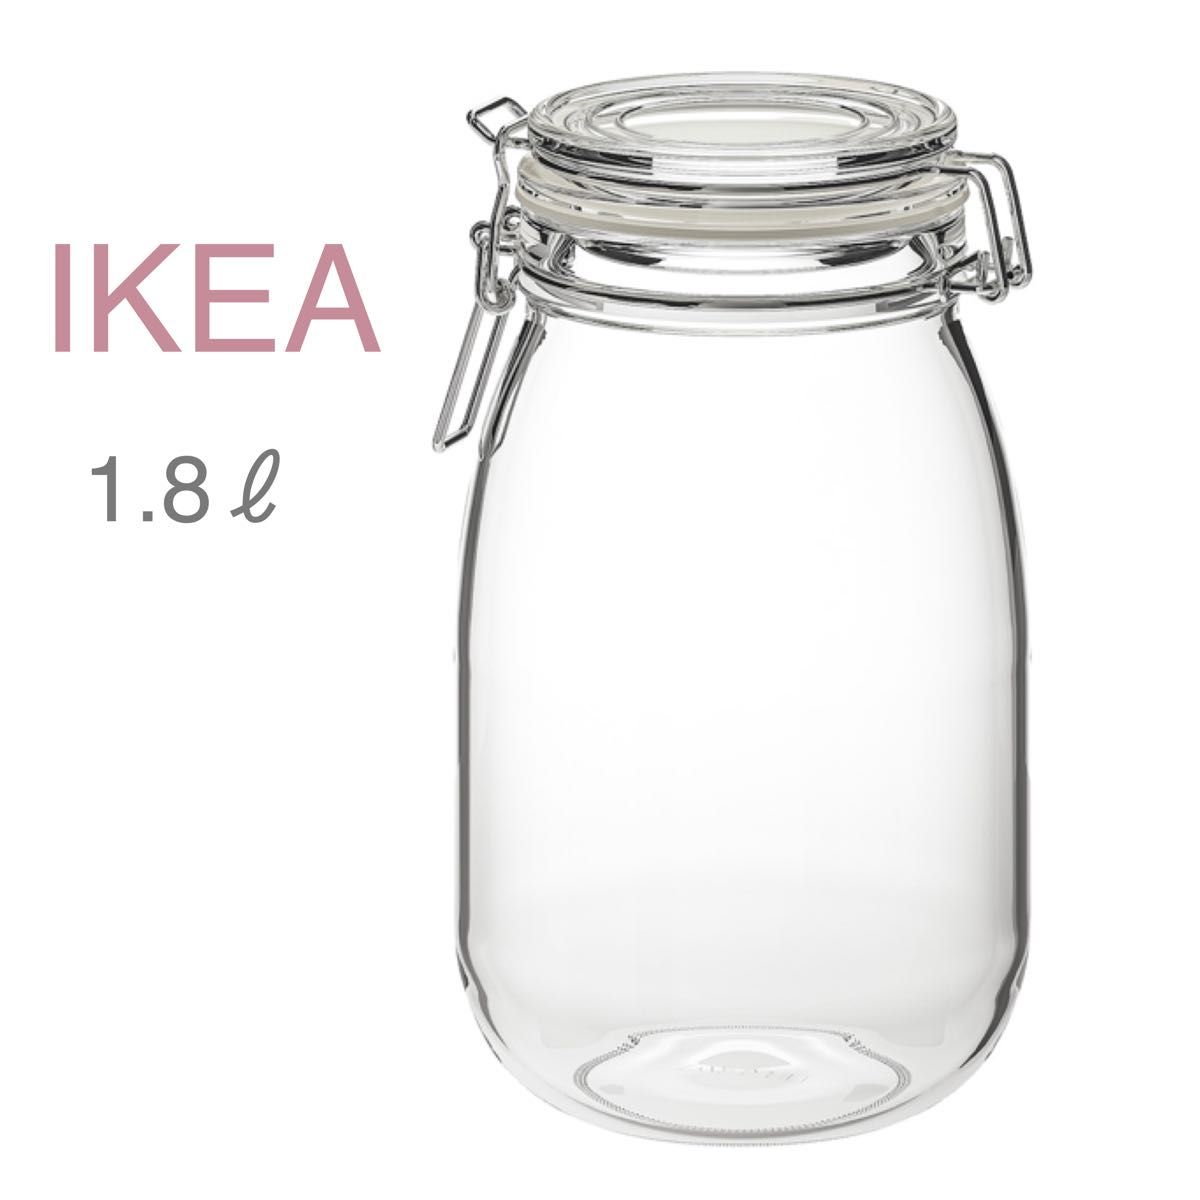 【新品】IKEA イケア ガラス 保存容器 1.8 L（コルケン）瓶 キャニスター 